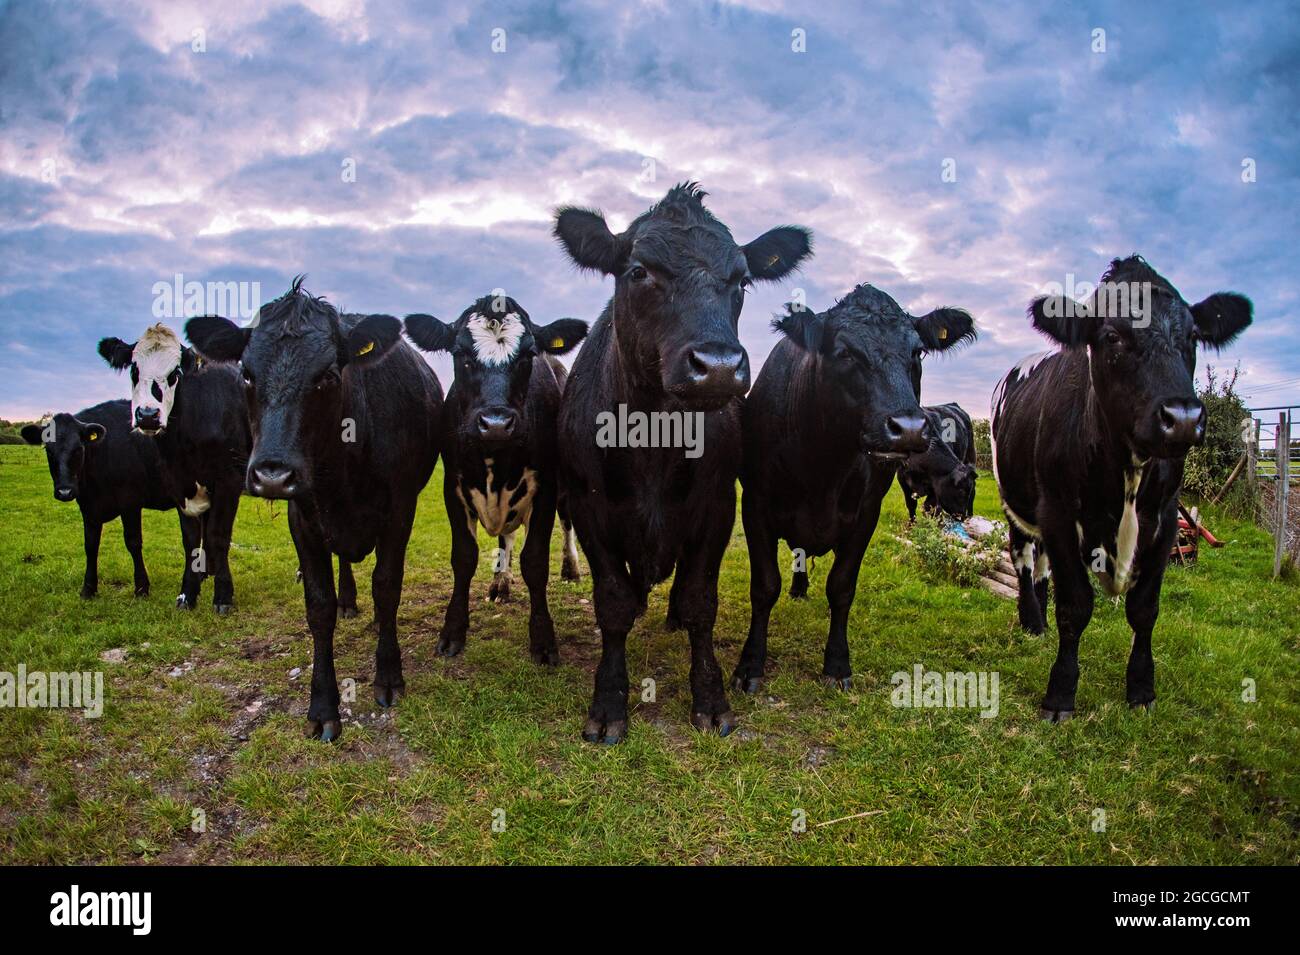 Vaches / taureaux dans un champ qui se rassemble autour, intrigué par le photographe. Banque D'Images